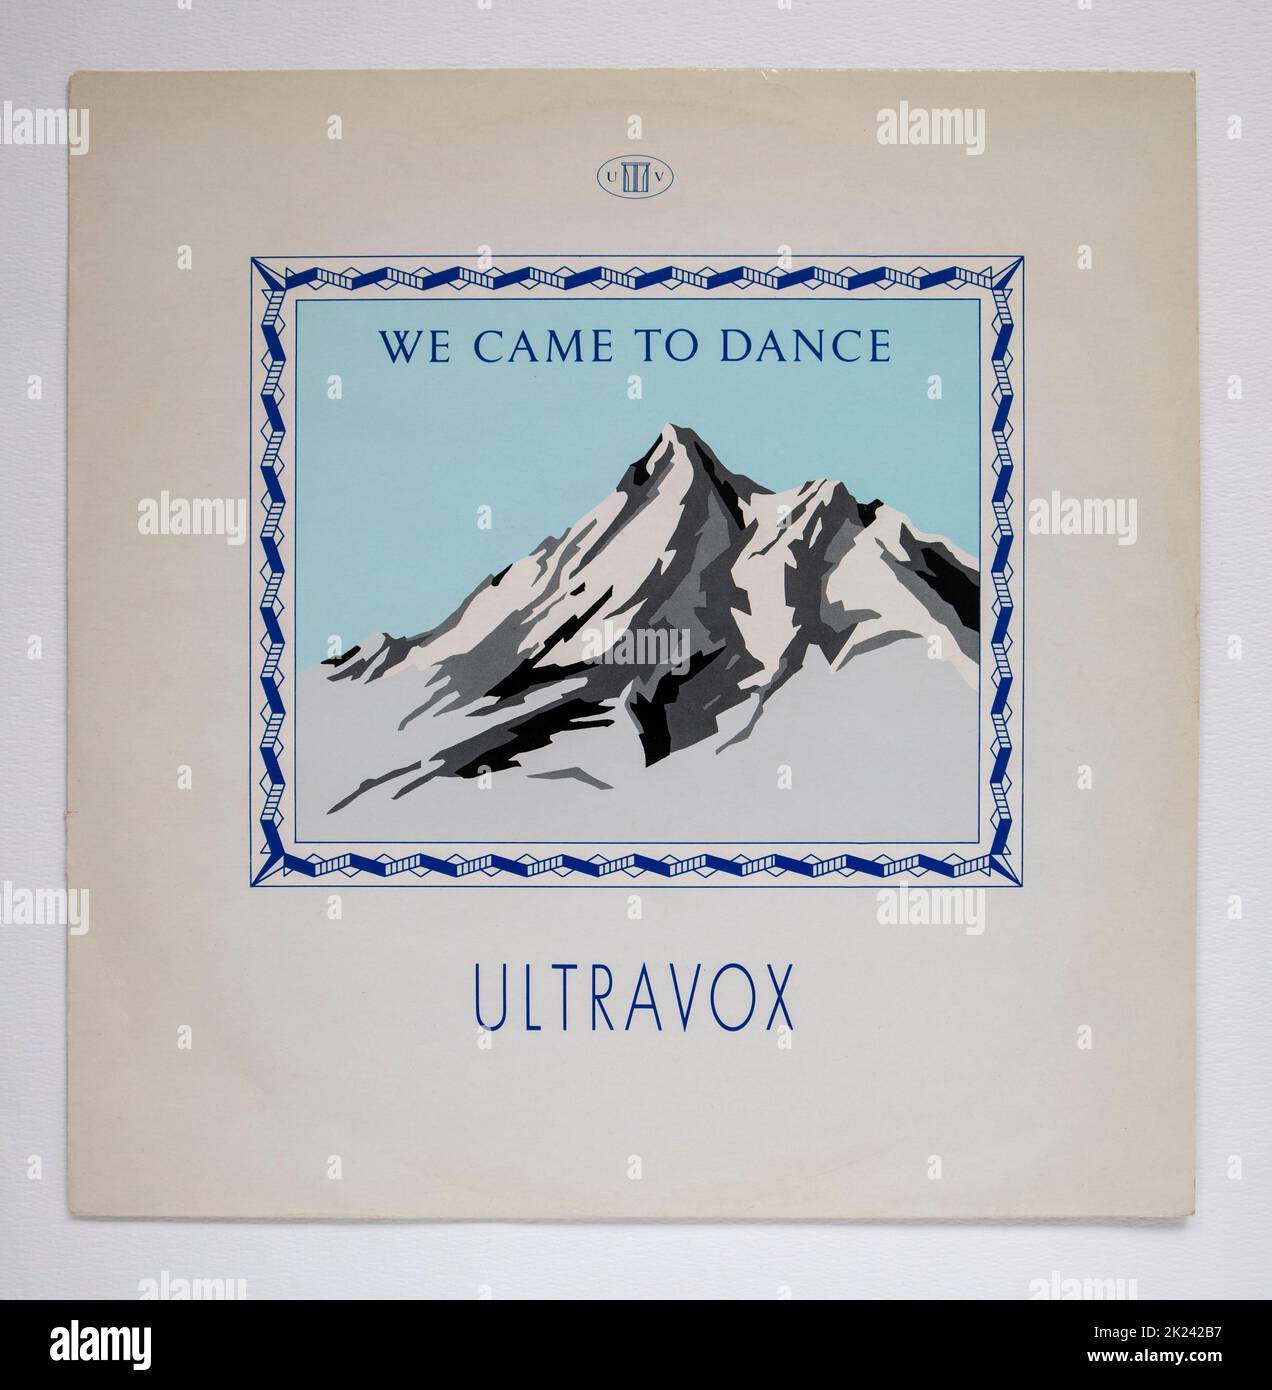 Imagen de la versión de 12 pulgadas de We Come to Dance de Ultravox, que fue lanzado en 1983 Foto de stock